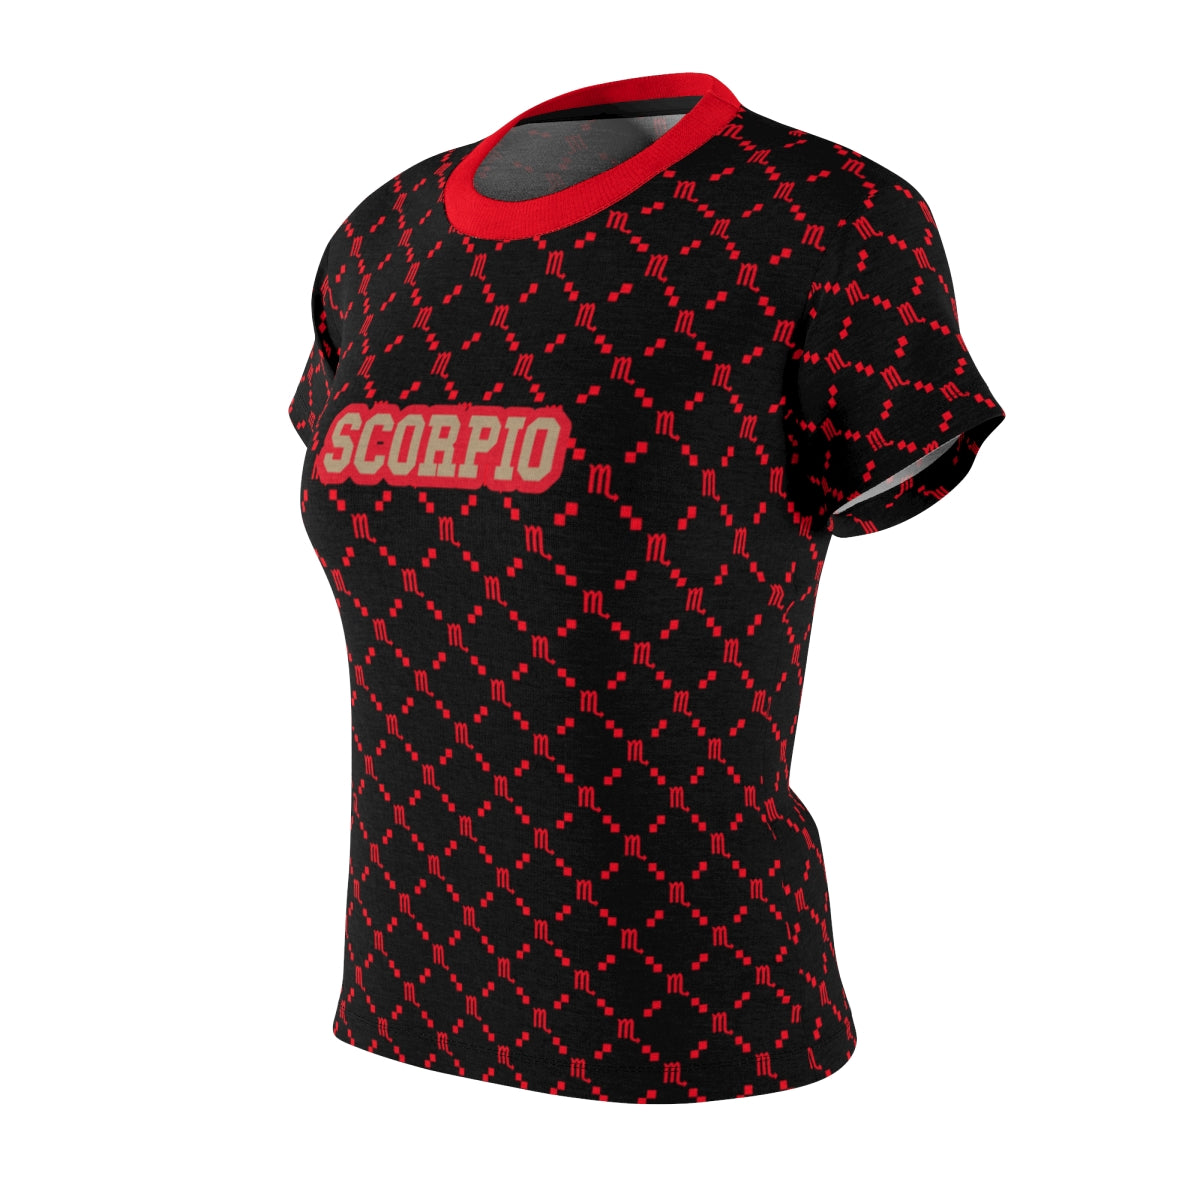 Scorpio G-Style Shirt - Red